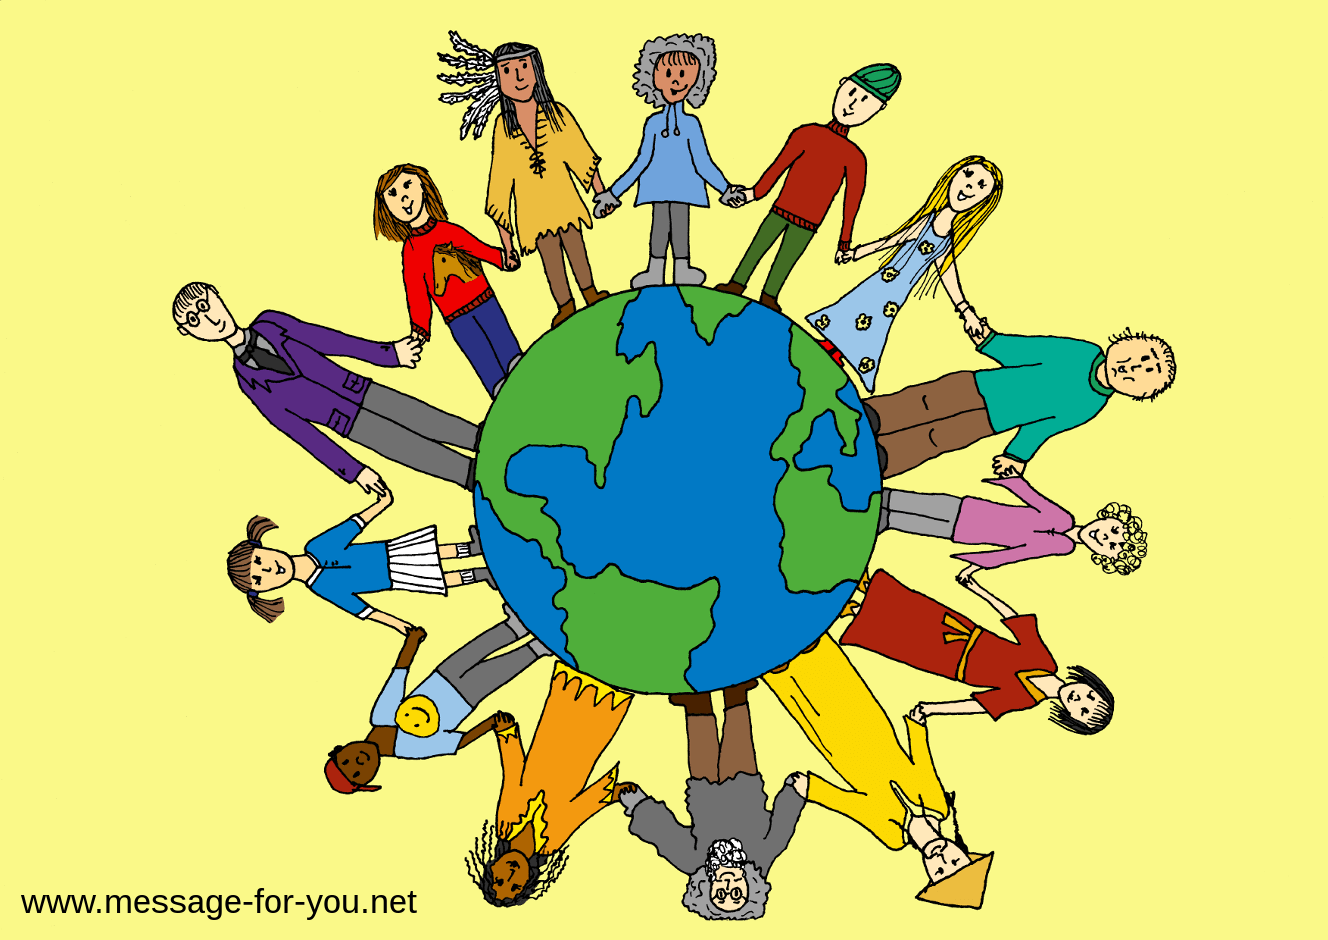 Dessin coloré de personnes tenant la main autour du globe terrestre